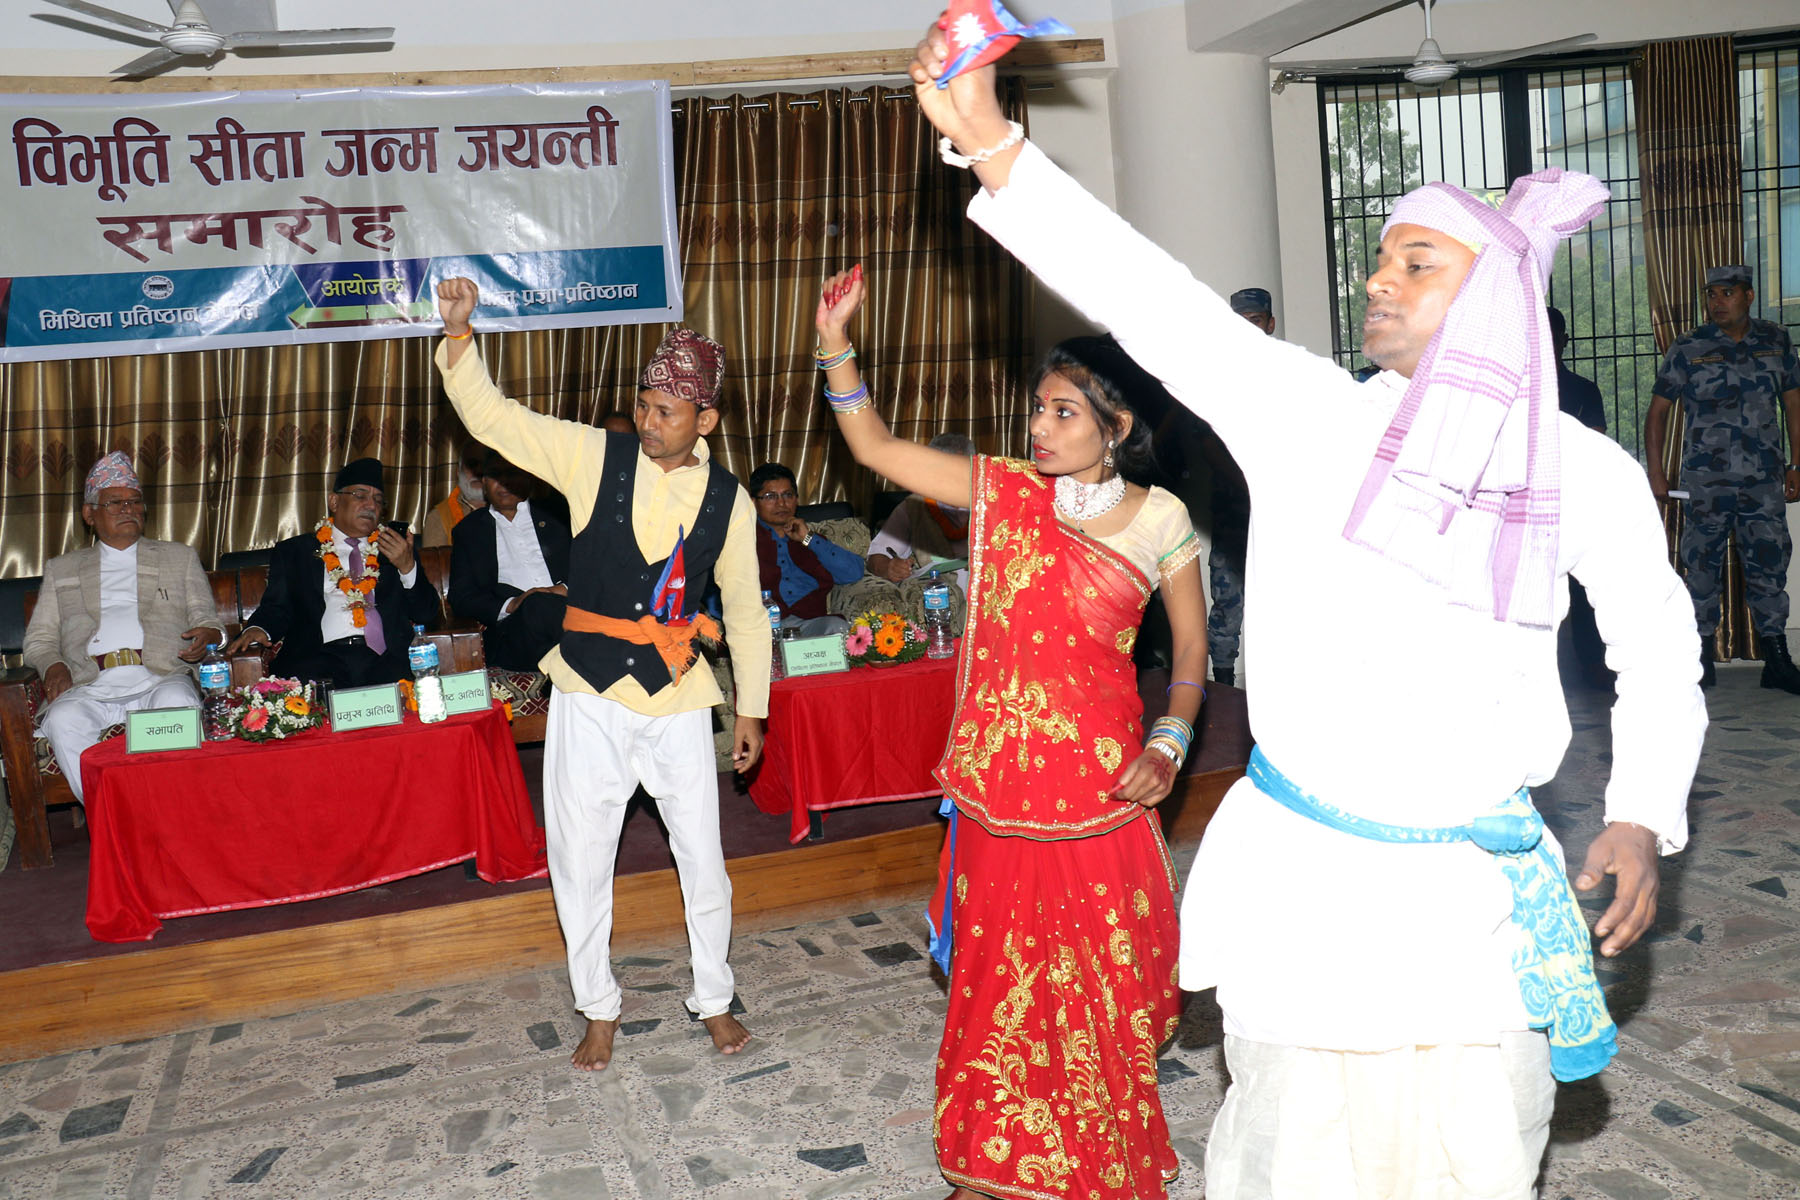 राष्ट्रिय विभूति सीता जन्म जयन्तीका अवसरमा नृत्य प्रस्तुत गर्दै कलाकार